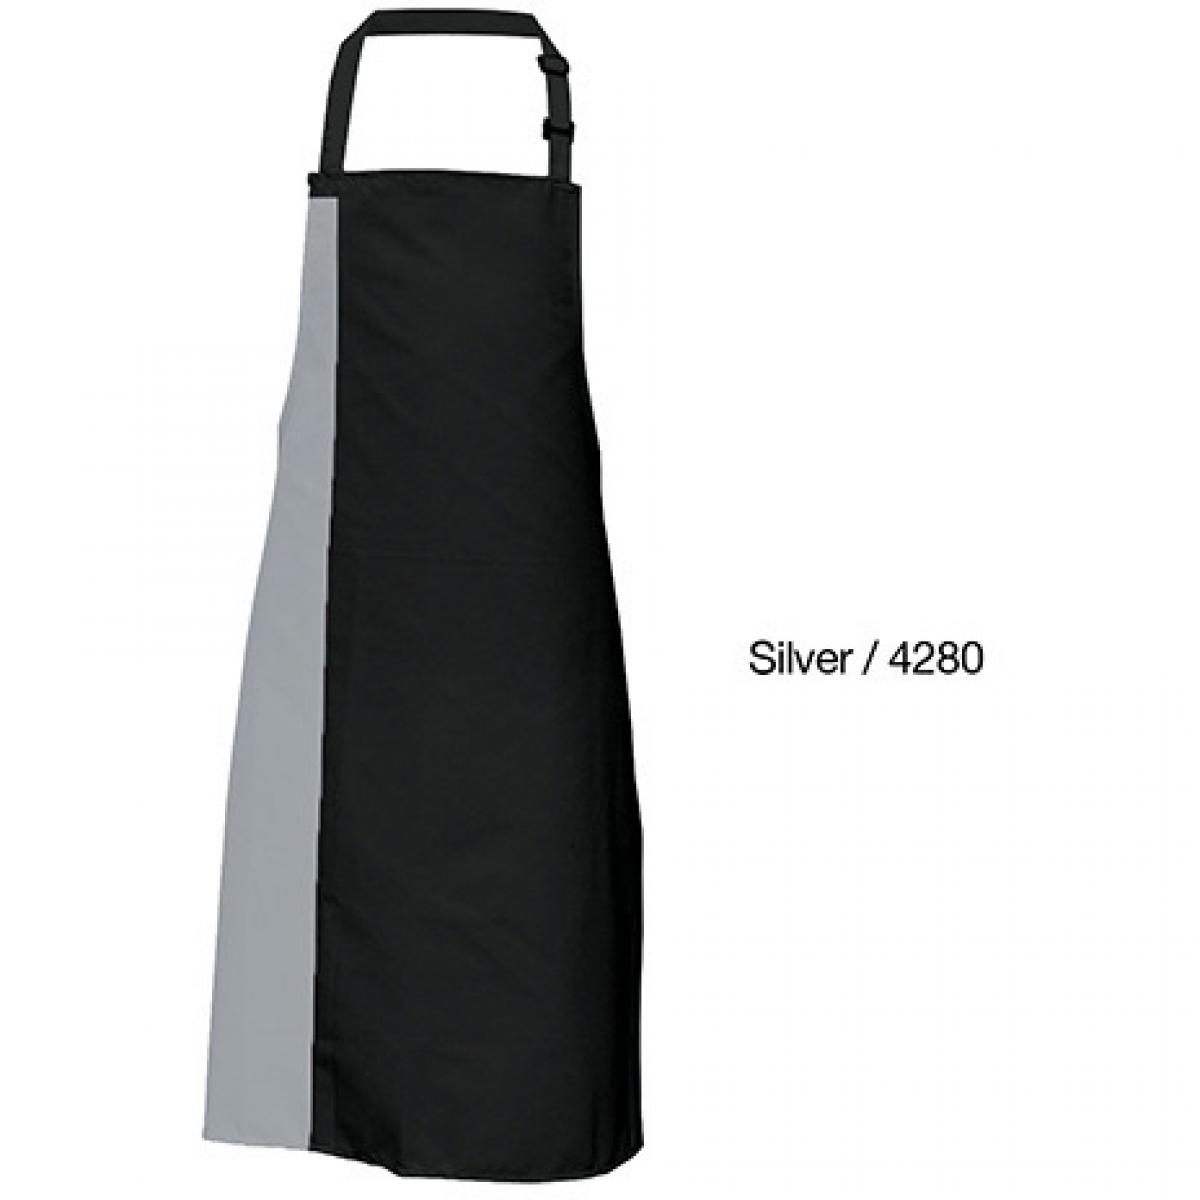 Hersteller: Link Kitchen Wear Herstellernummer: DS8572 Artikelbezeichnung: Duo Apron - 72 x 85 cm - Waschbar bis 60 °C Farbe: Black/Pale Grey (Silver) (ca. Pantone 428)